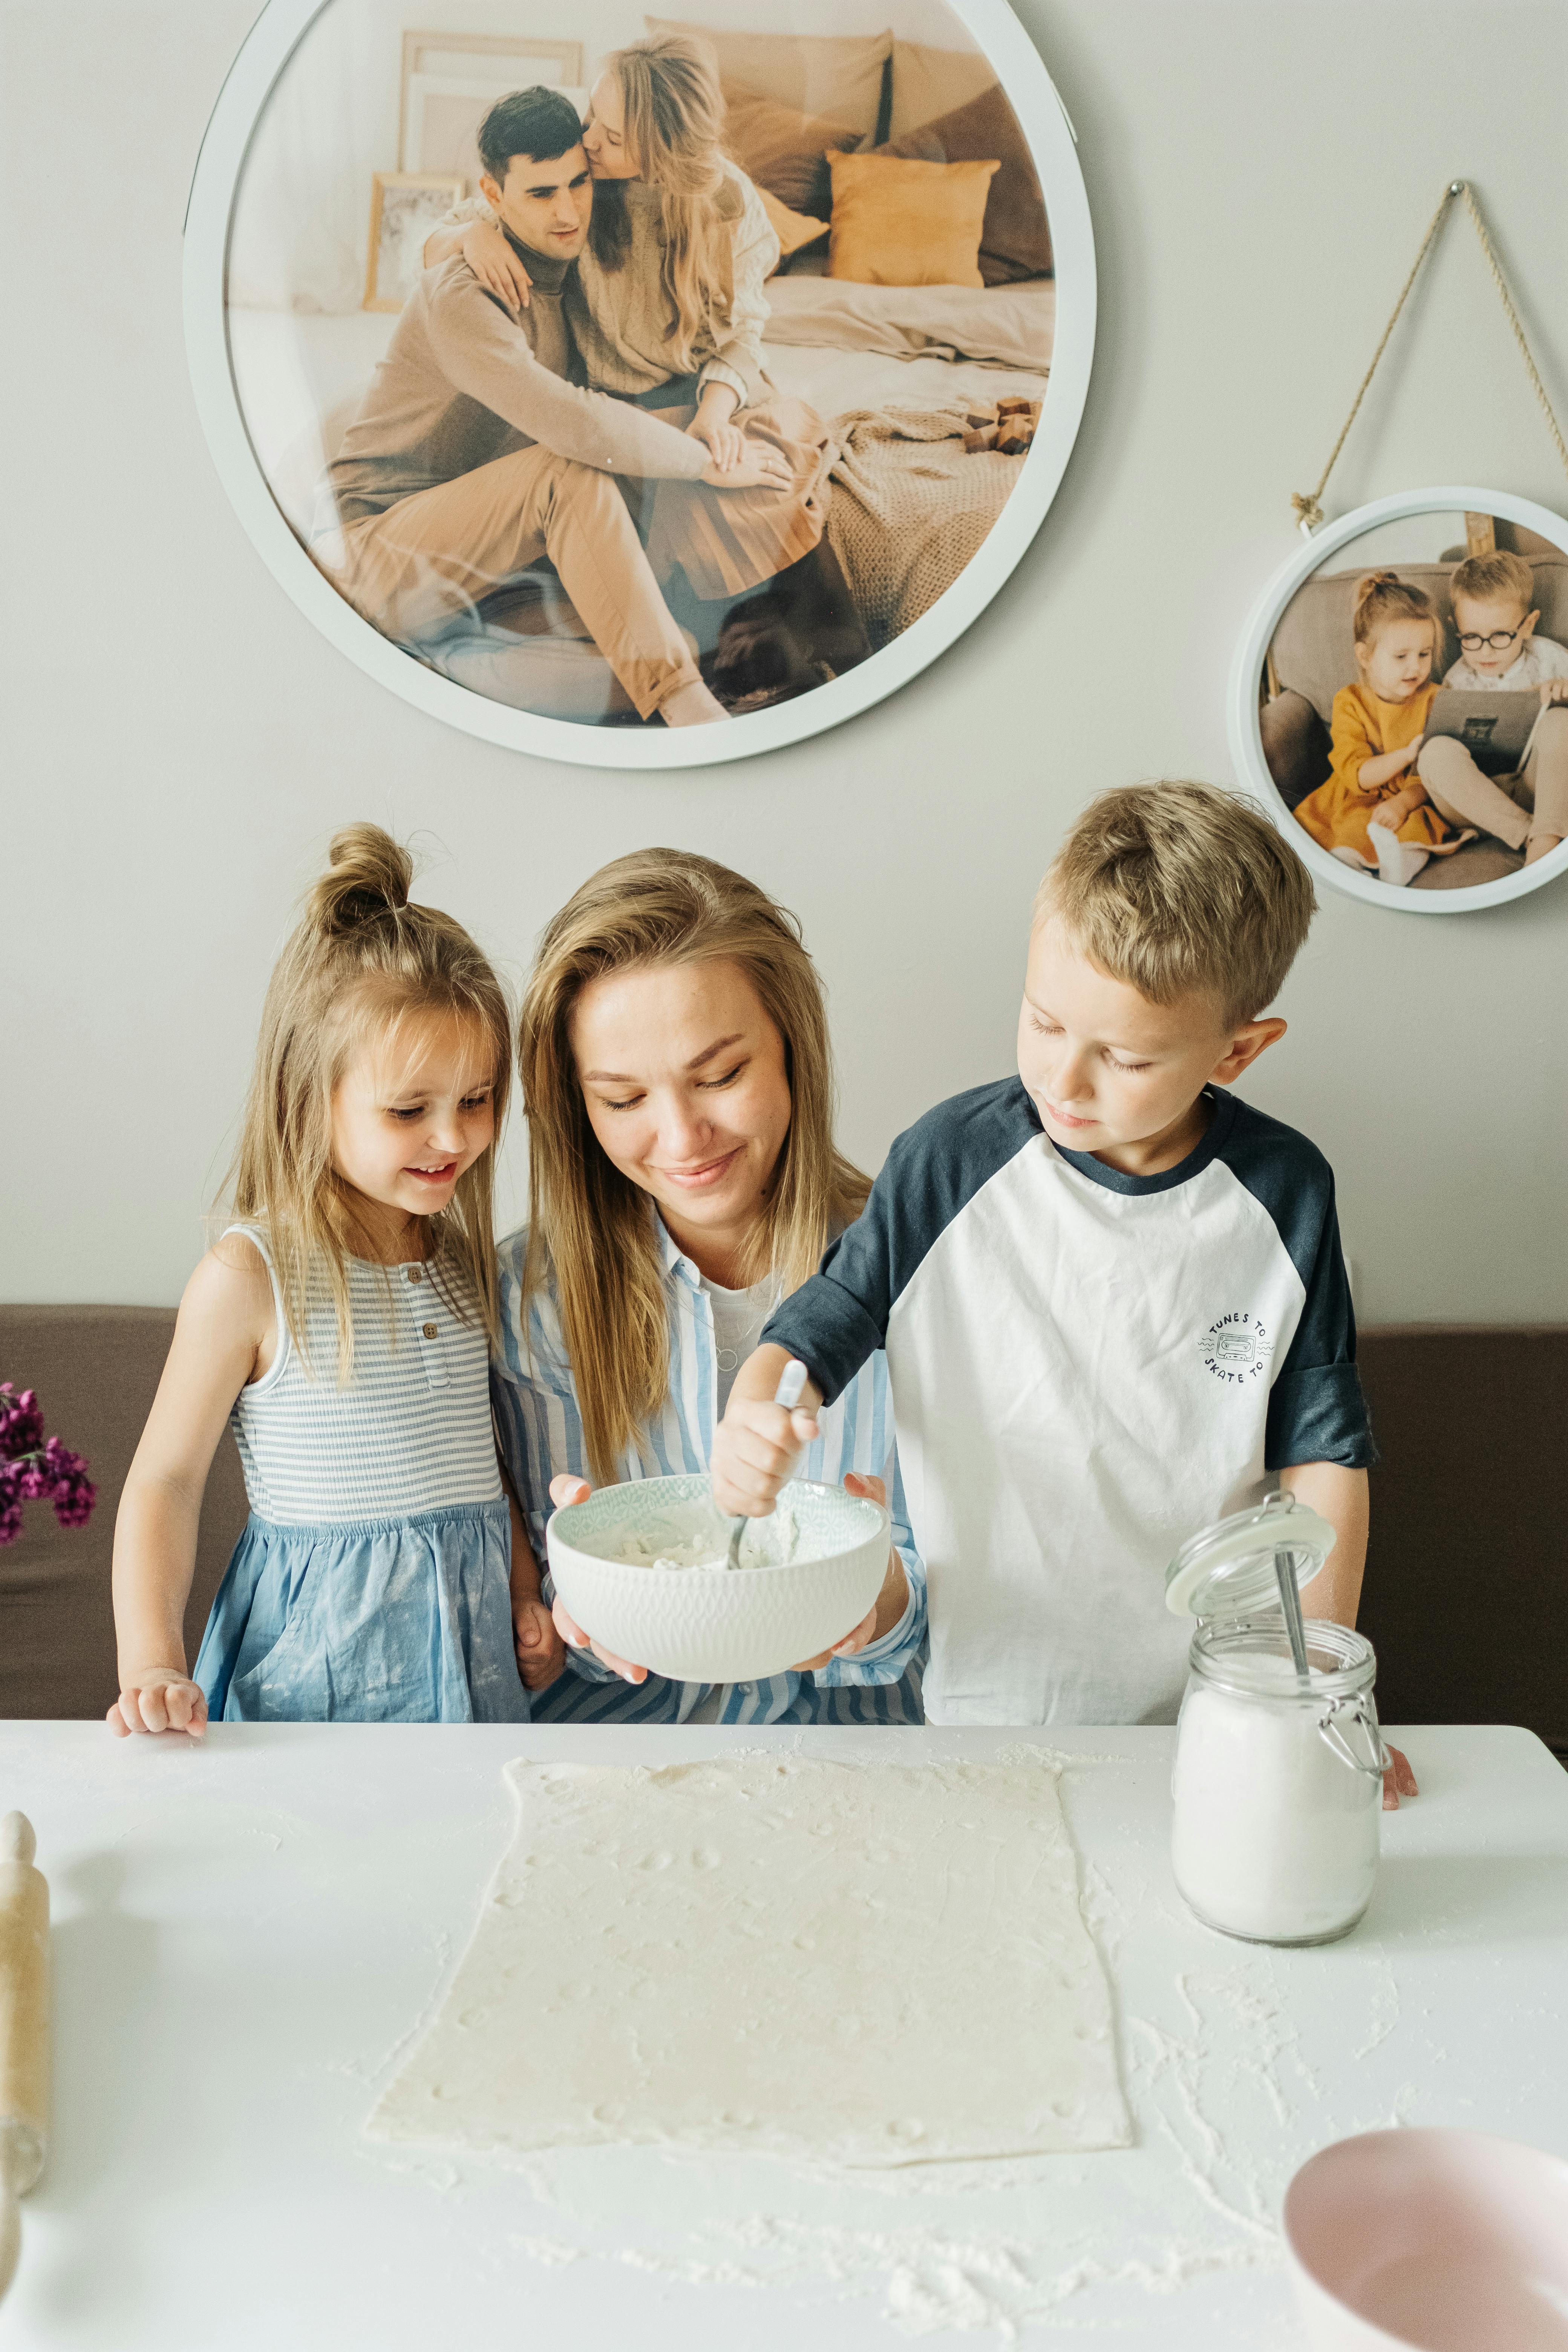 Doce claves para que los niños colaboren en las tareas domésticas